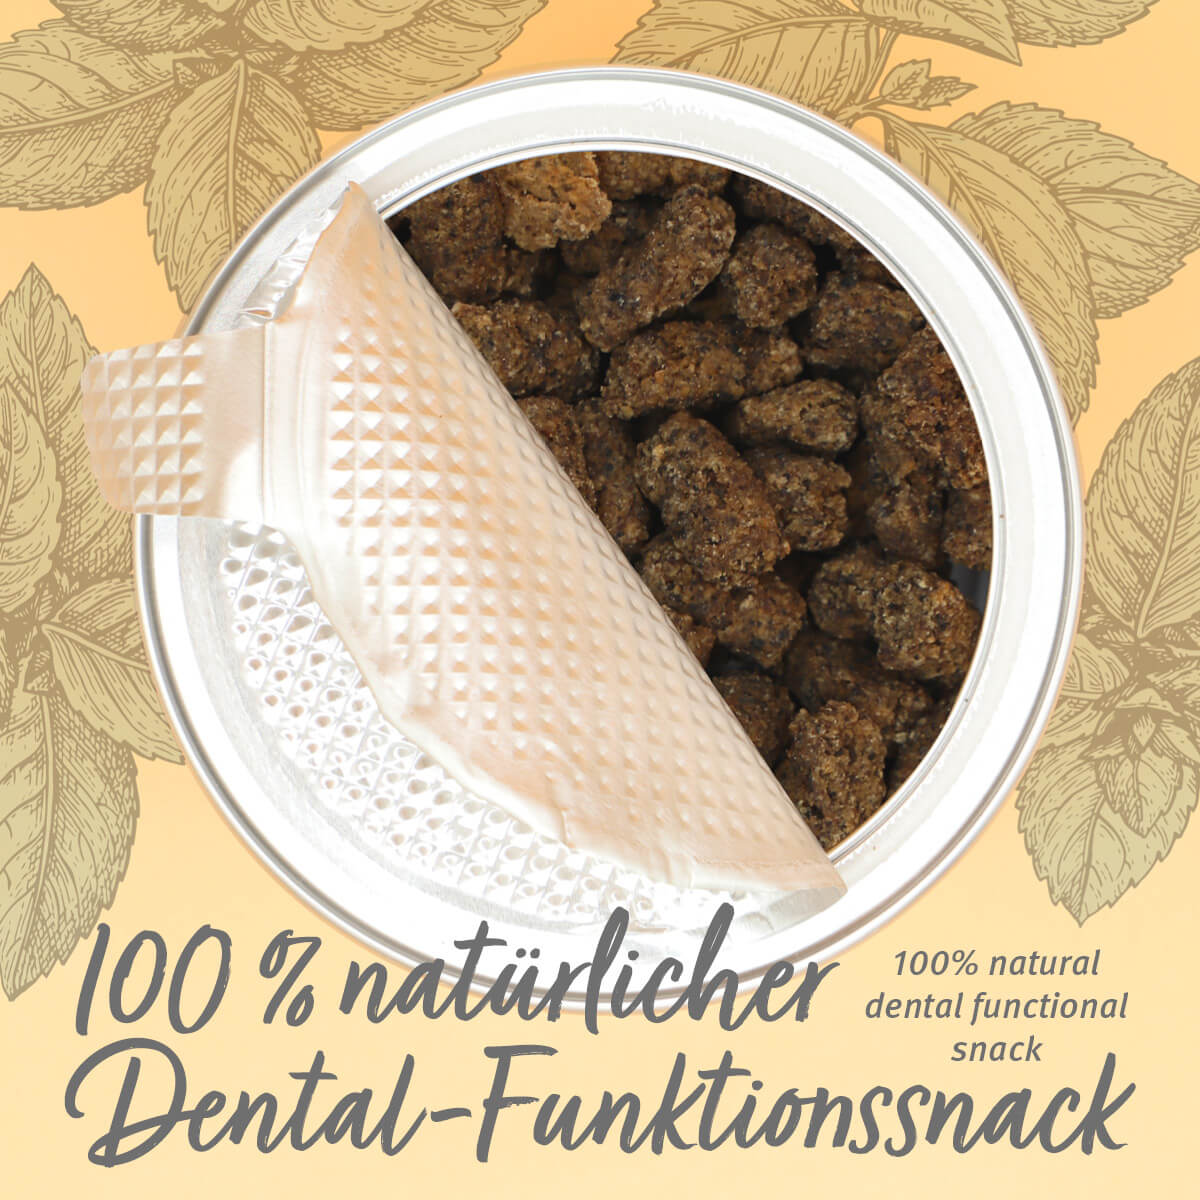 Inhalt des 100% natürlichen Dental-Funktionsnack - AniForte